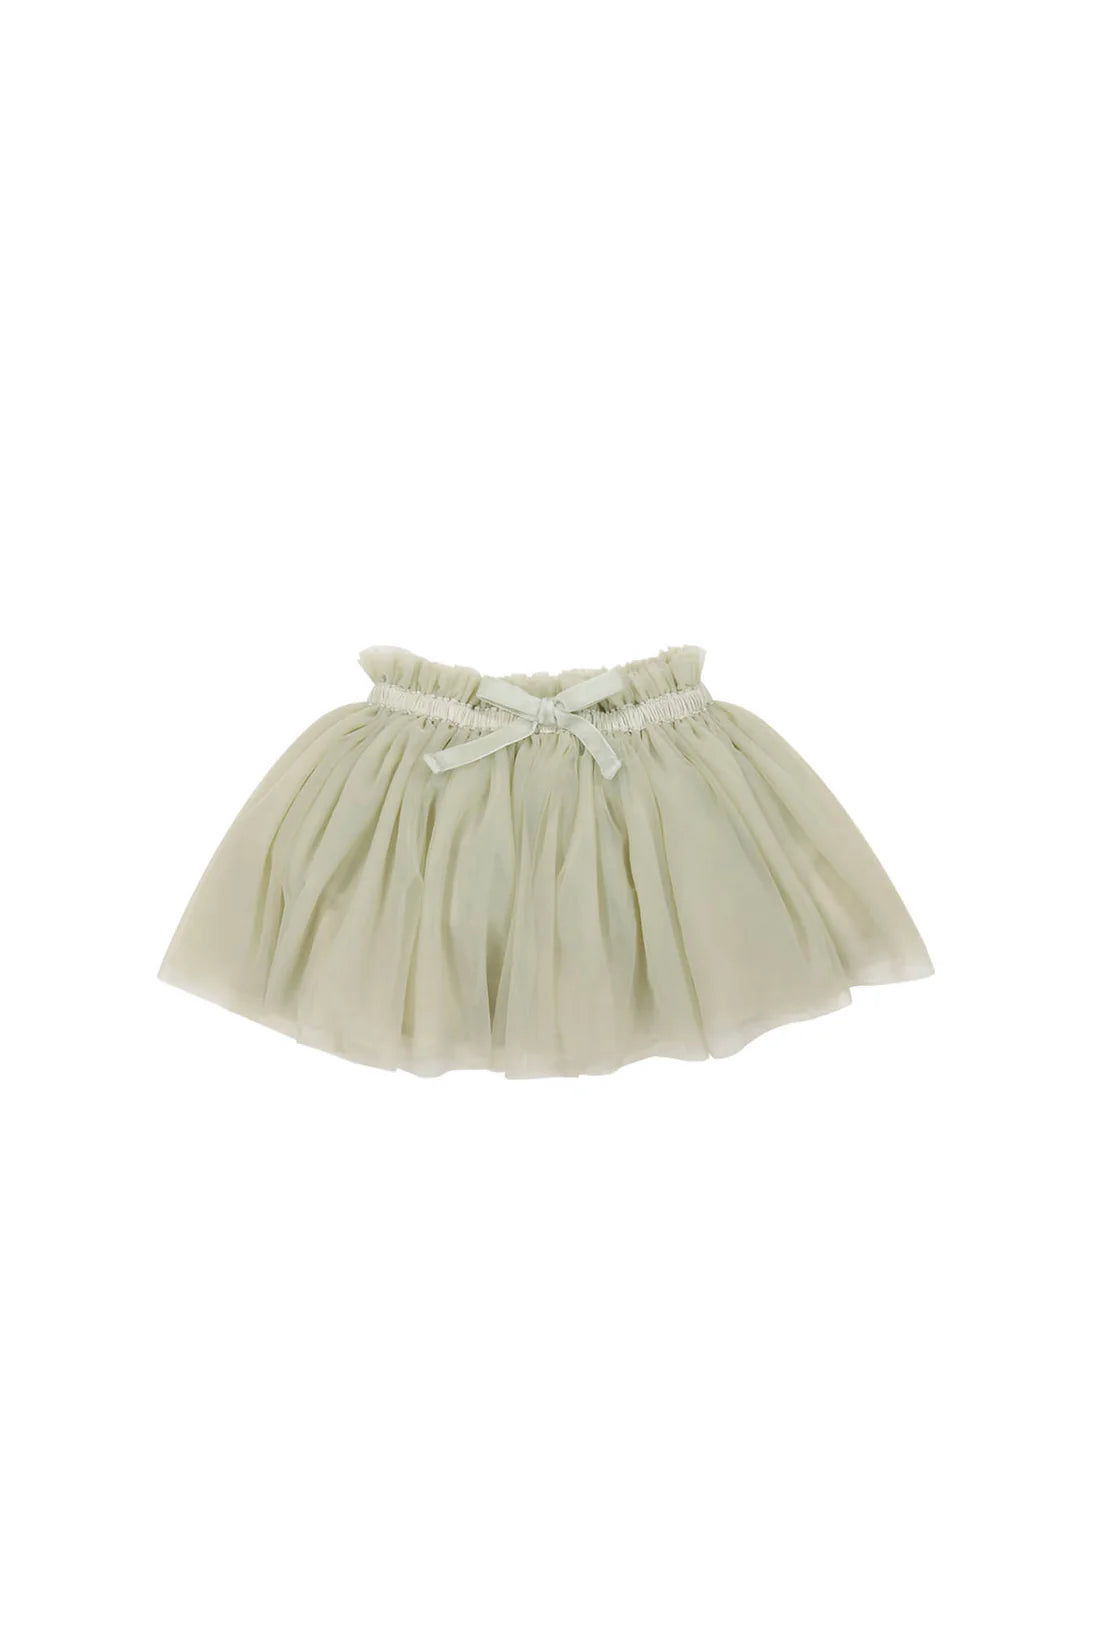 Classic Tutu Skirt - Honeydew